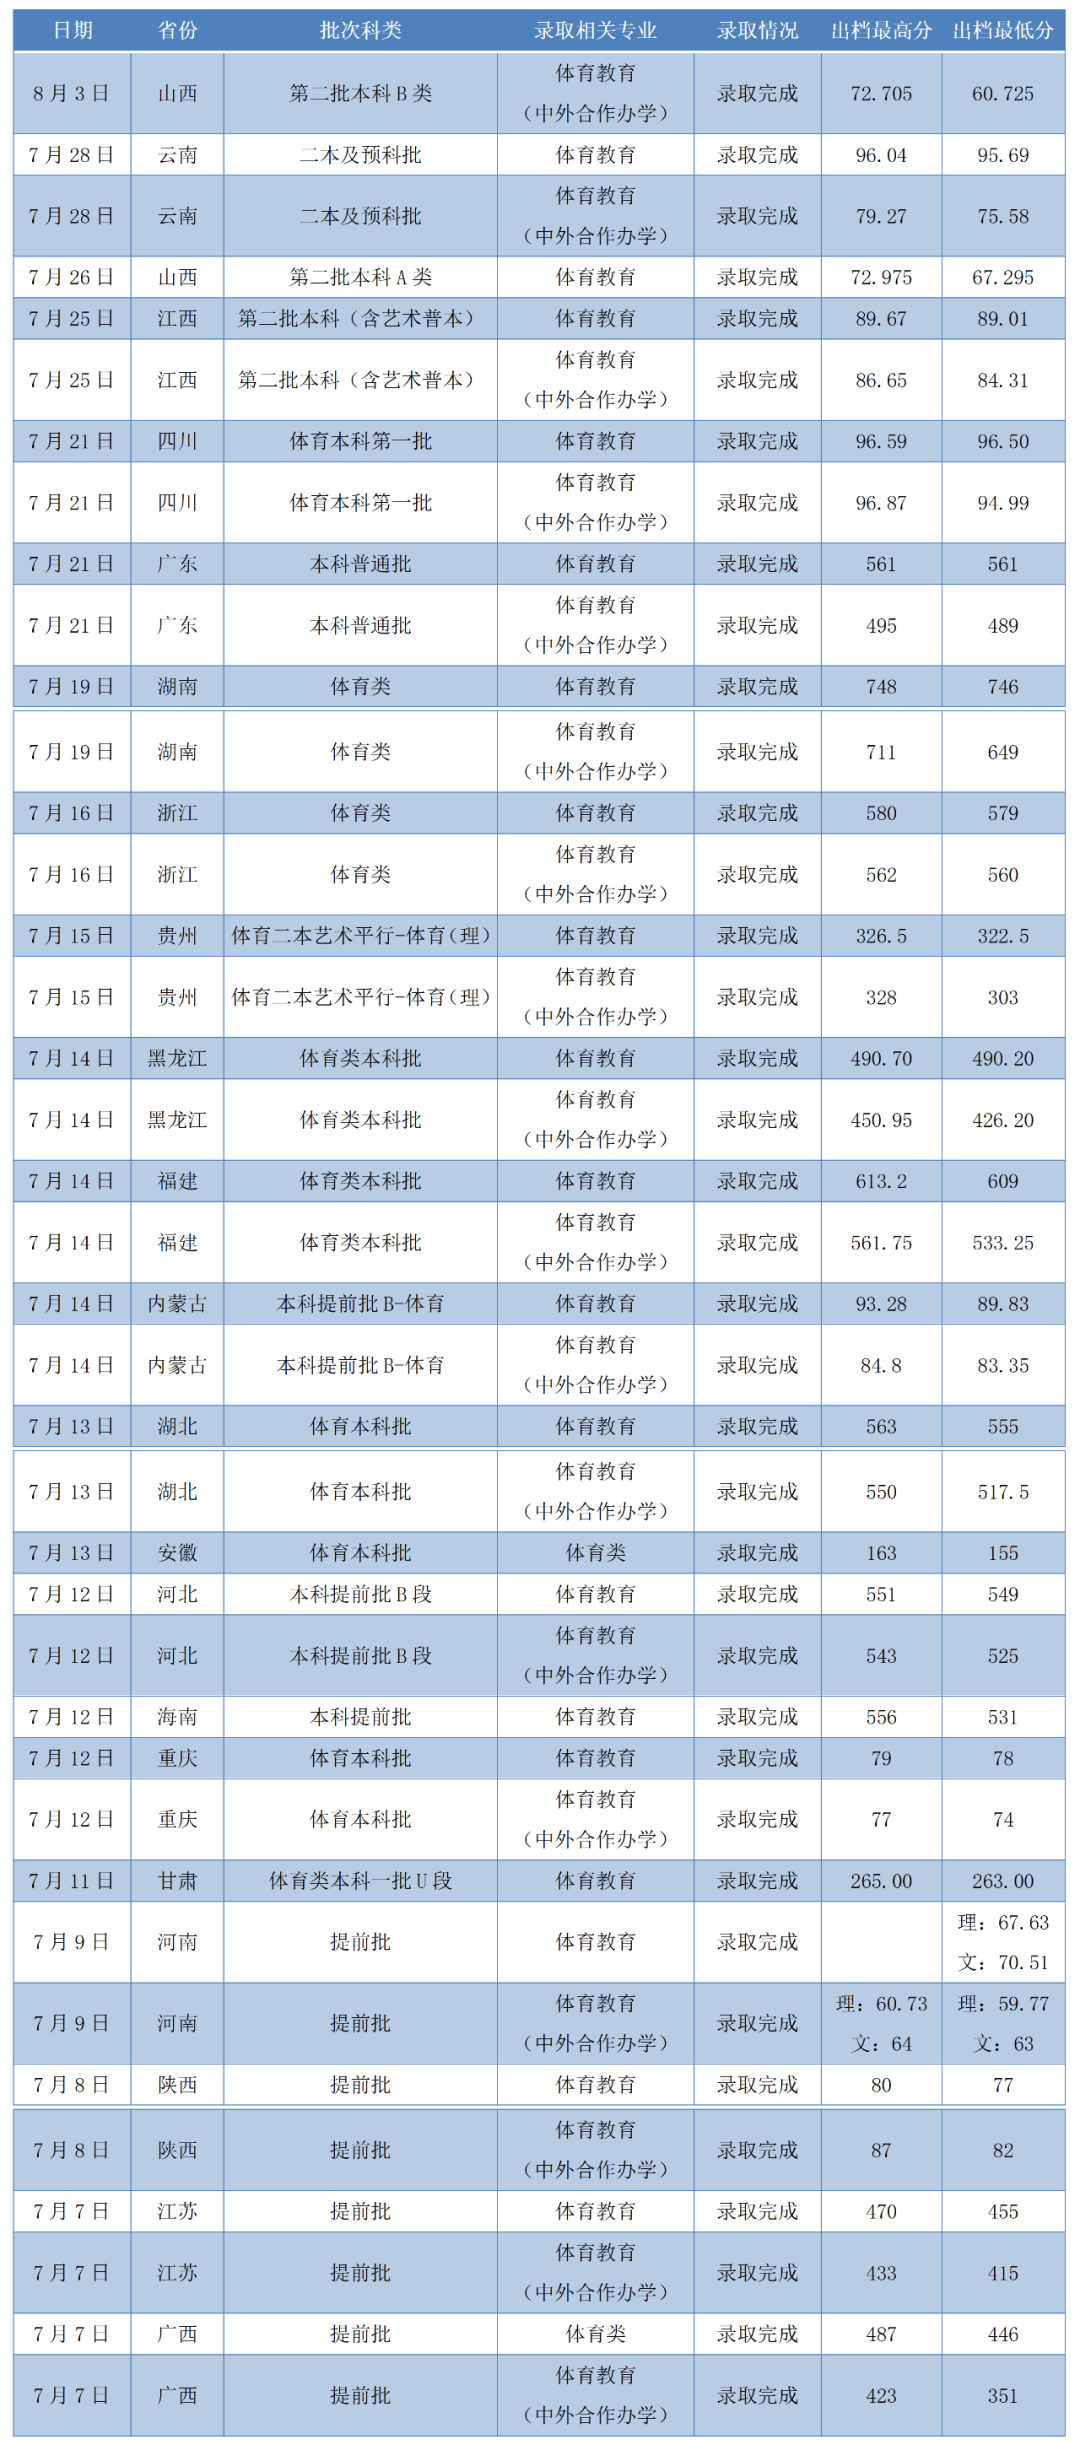 2021年广西师范大学高考录取进度及录取分数线丨每日更新(截至8月3日)